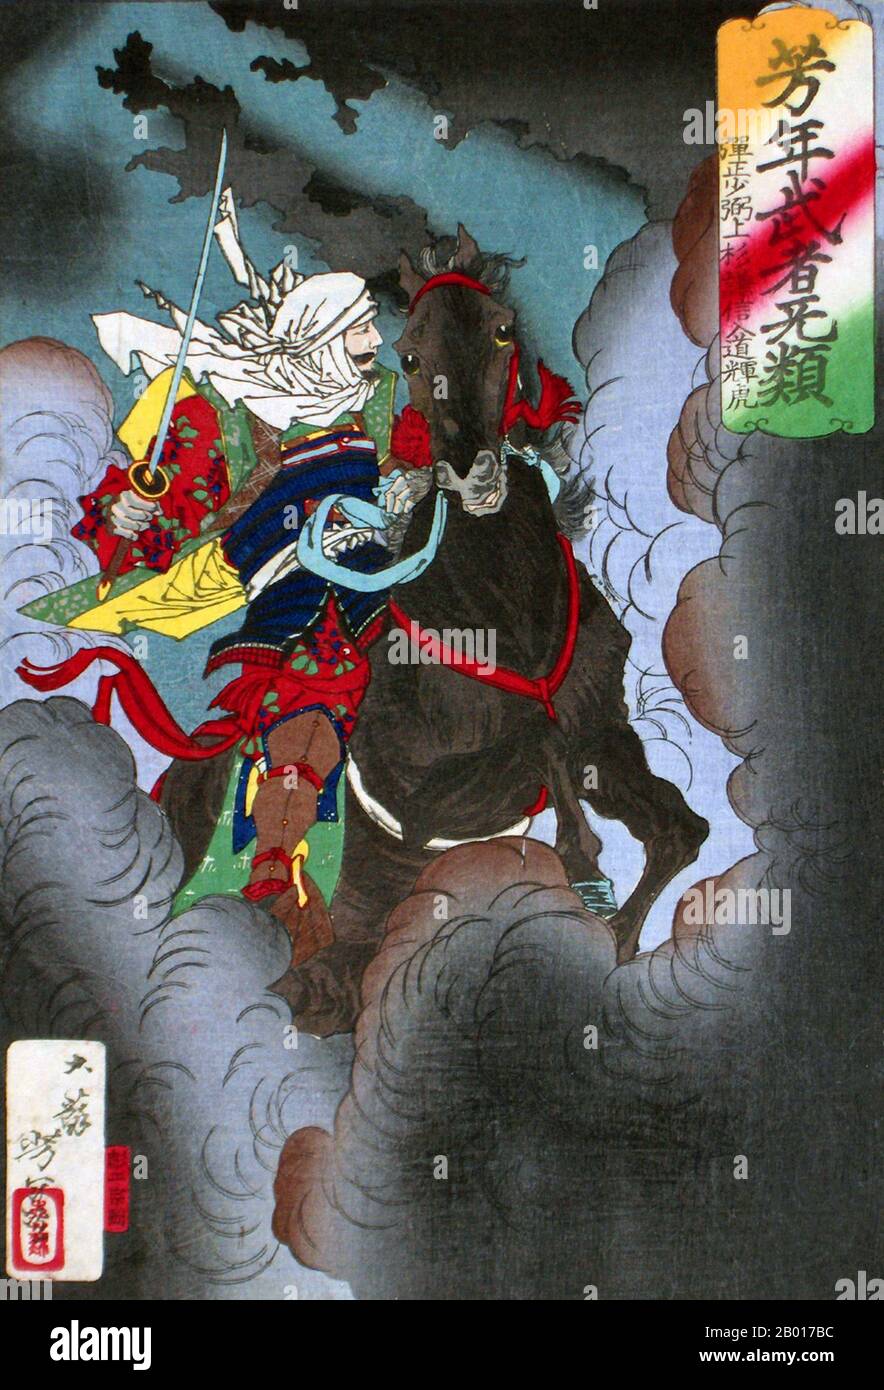 Giappone: "Uesugi Kenshin Nyudo Terutora Riding into Battle". Ukiyo-e woodblock print by Tsukioka Yoshitoshi (1839 - 9 giugno 1892), 1883. Tsukioka Yoshitoshi, anche chiamato Taiso Yoshitoshi, era un artista giapponese. È ampiamente riconosciuto come l'ultimo grande maestro di Ukiyo-e, un tipo di stampa giapponese a blocchi di legno. È inoltre considerato uno dei più grandi innovatori della forma. La sua carriera ha abbracciato due epoche – gli ultimi anni del Giappone feudale, e i primi anni del Giappone moderno dopo la Restaurazione Meiji. Foto Stock